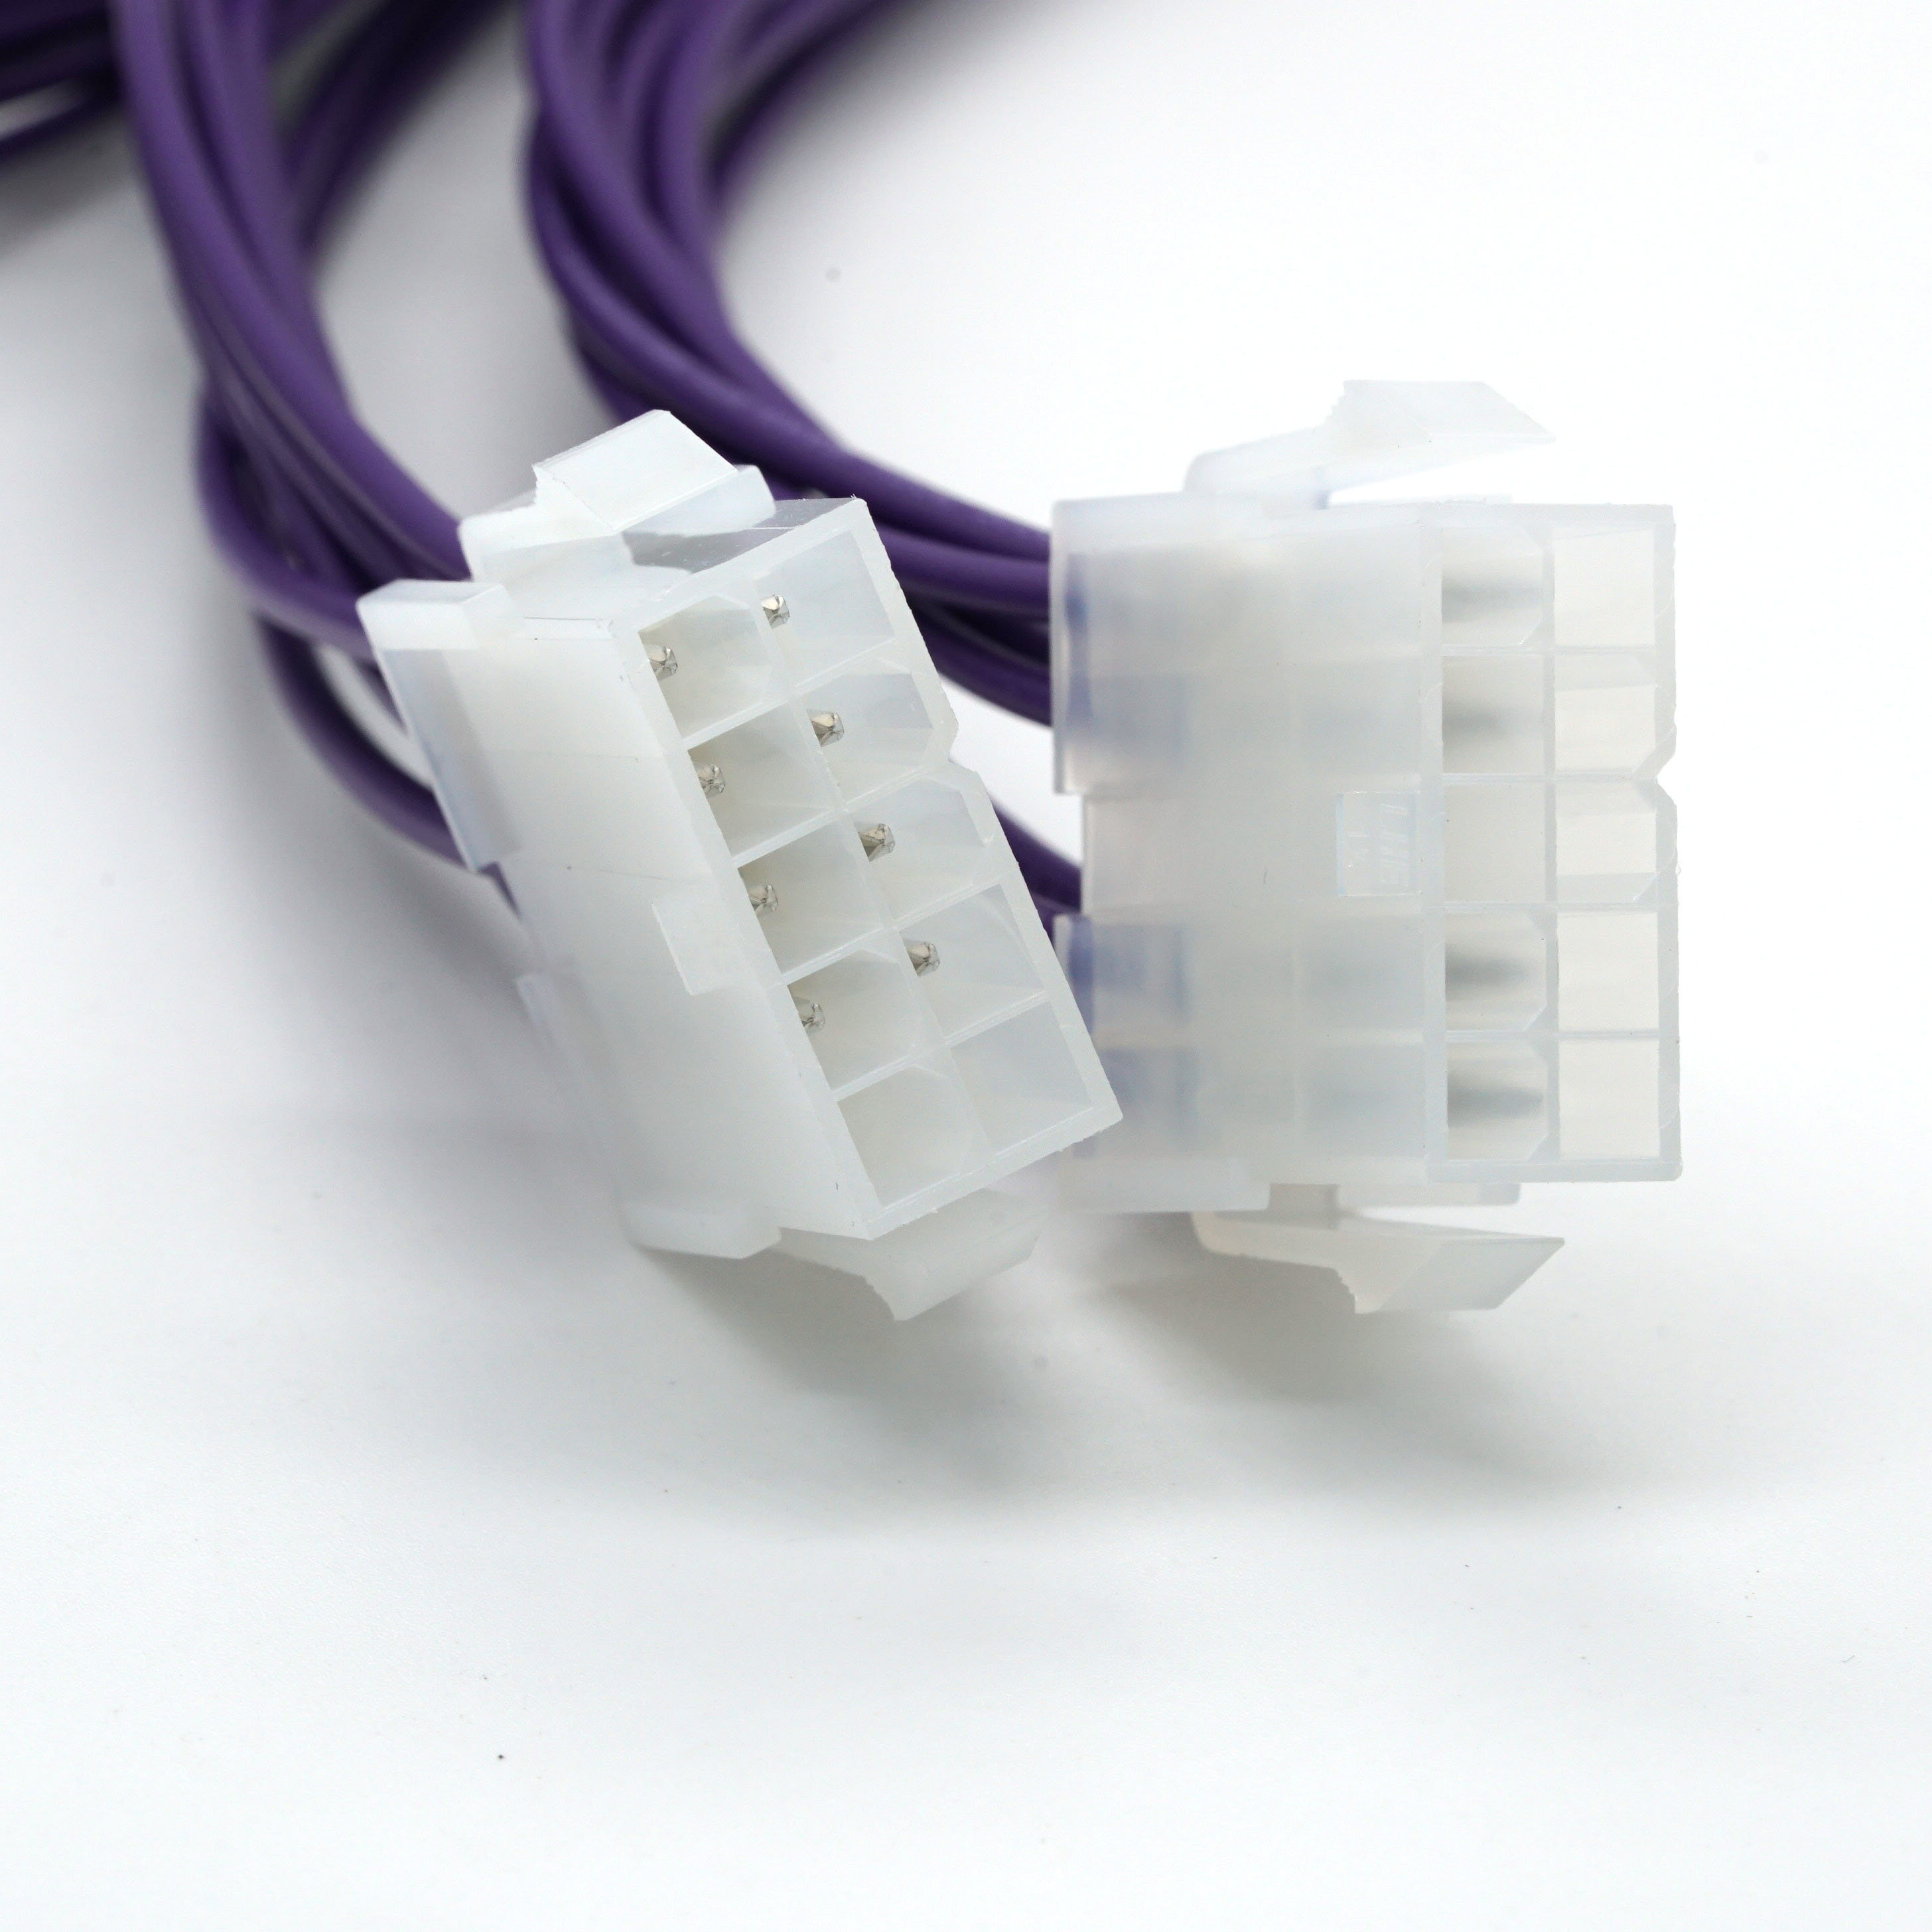 Molex 5557 terminalis wiring phaleras